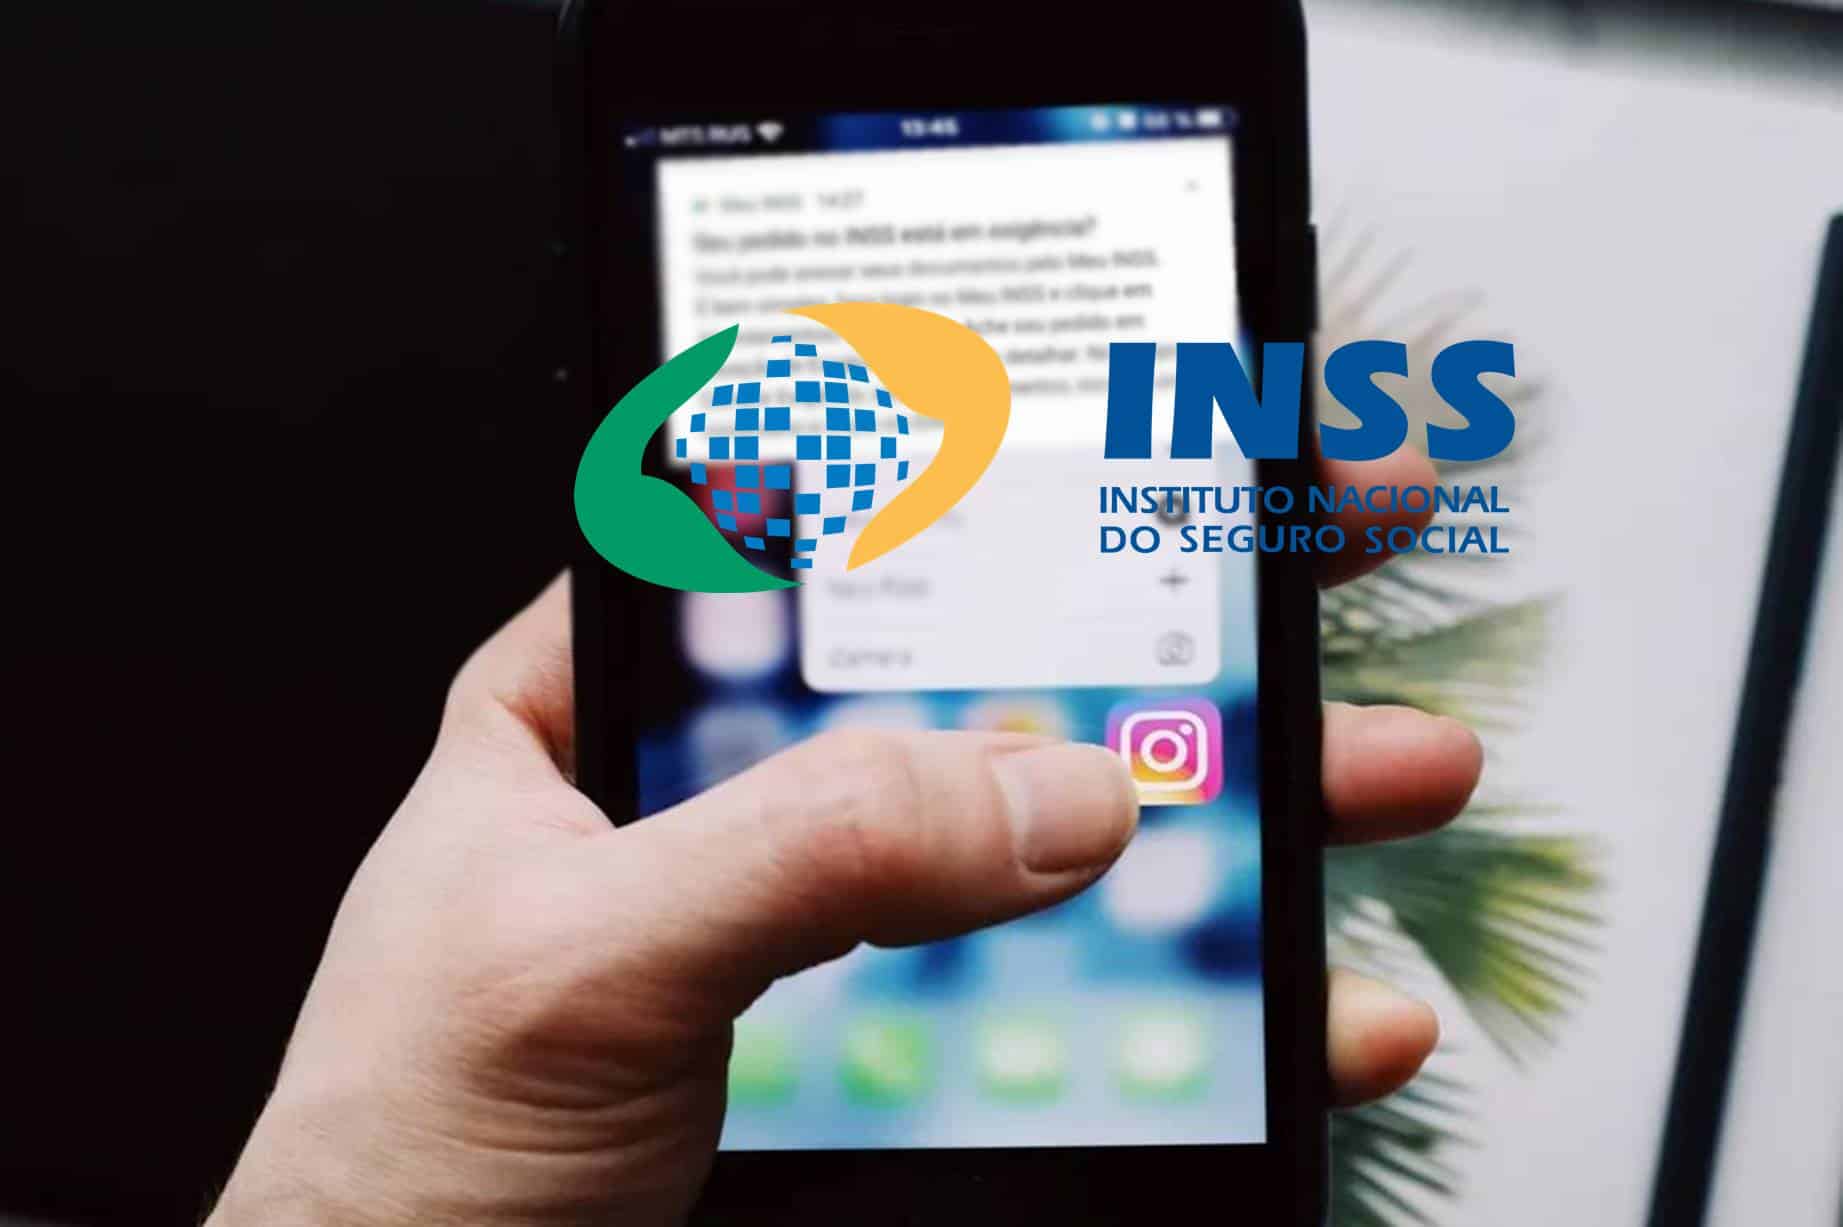 INSS mostra modelo de notificação que vai aparecer no celular de aposentados, pensionistas e segurados